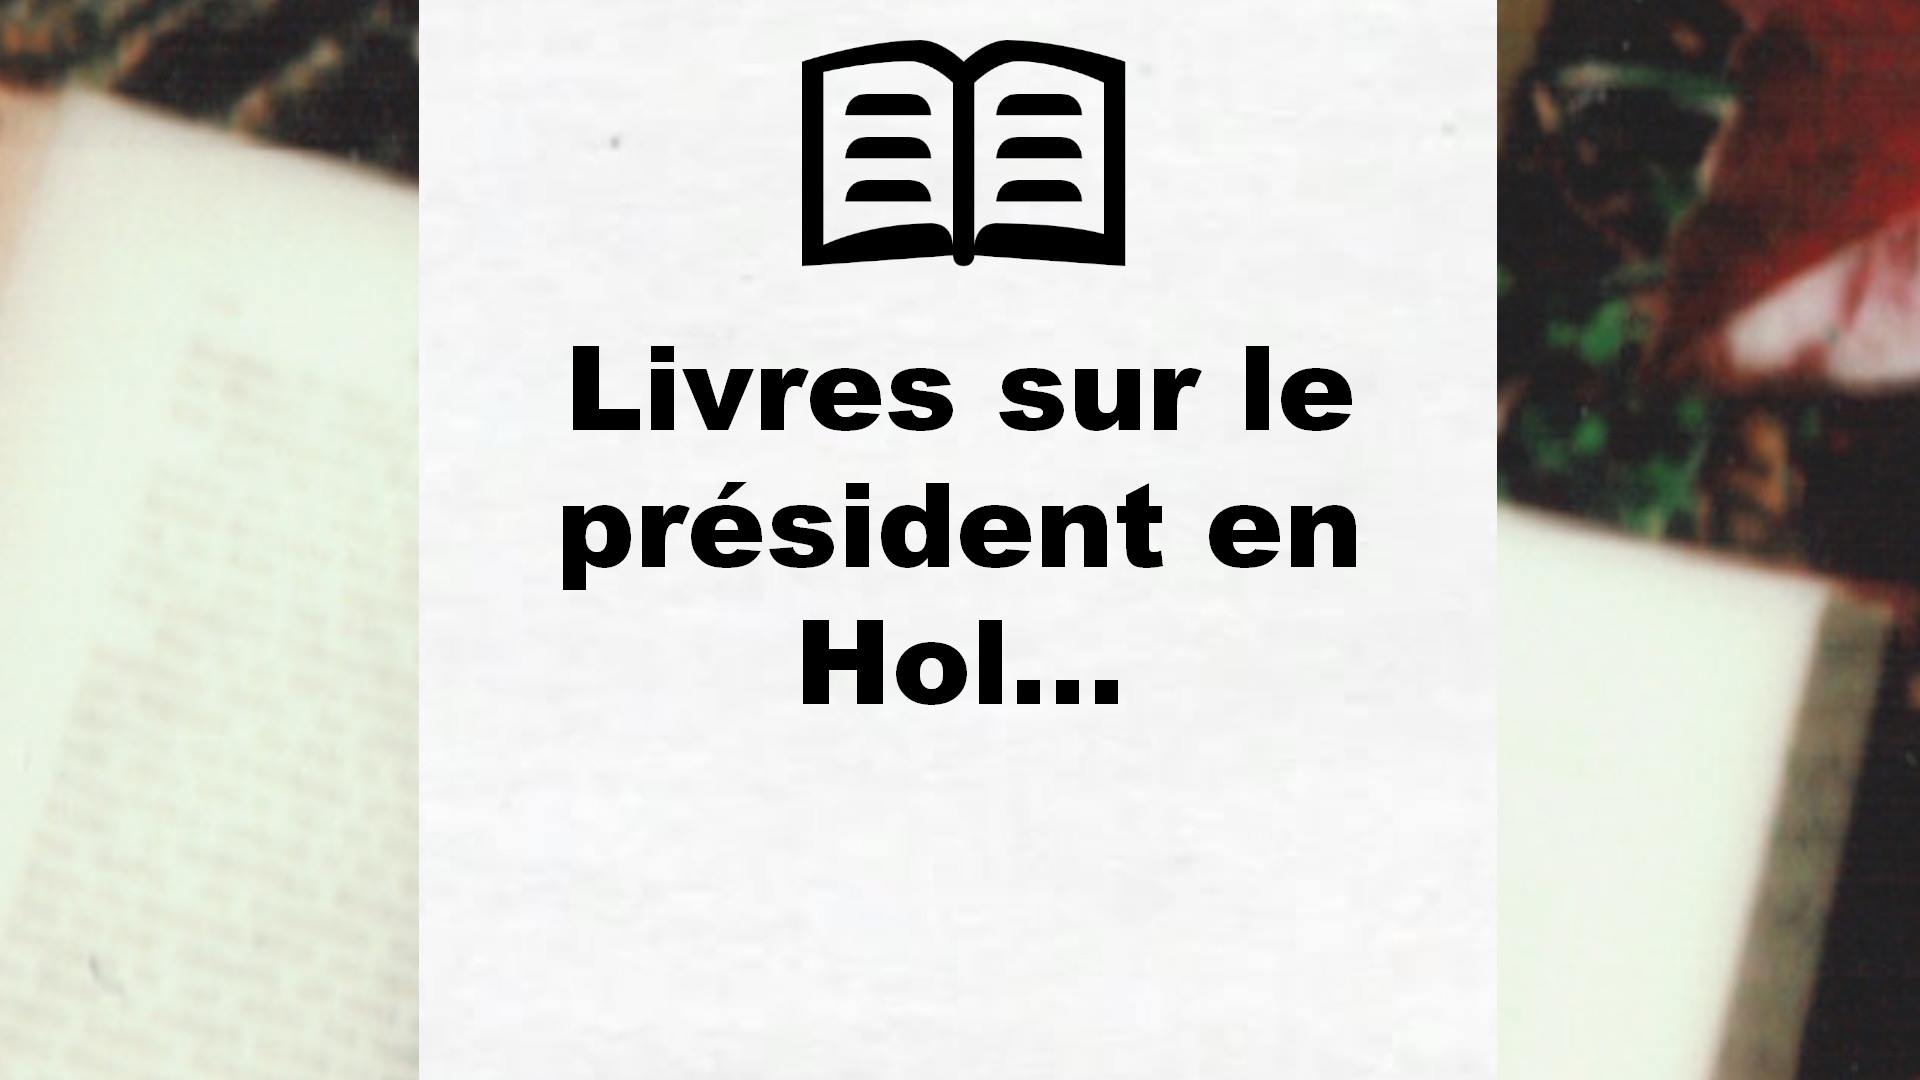 Livres sur le président en Hollande